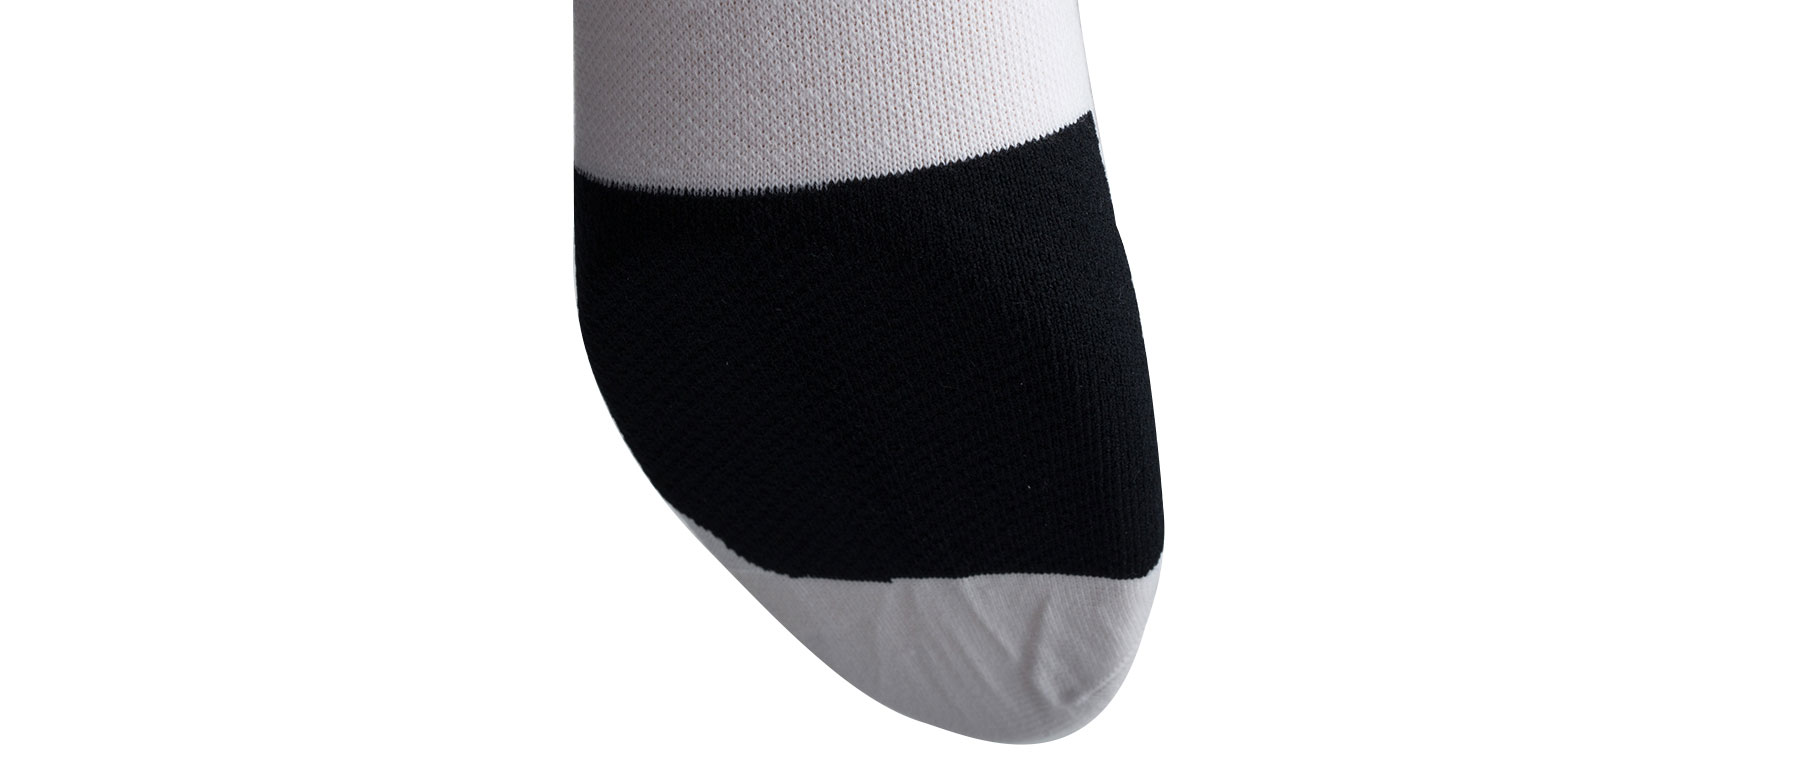 Pearl Izumi Elite Tall Sock